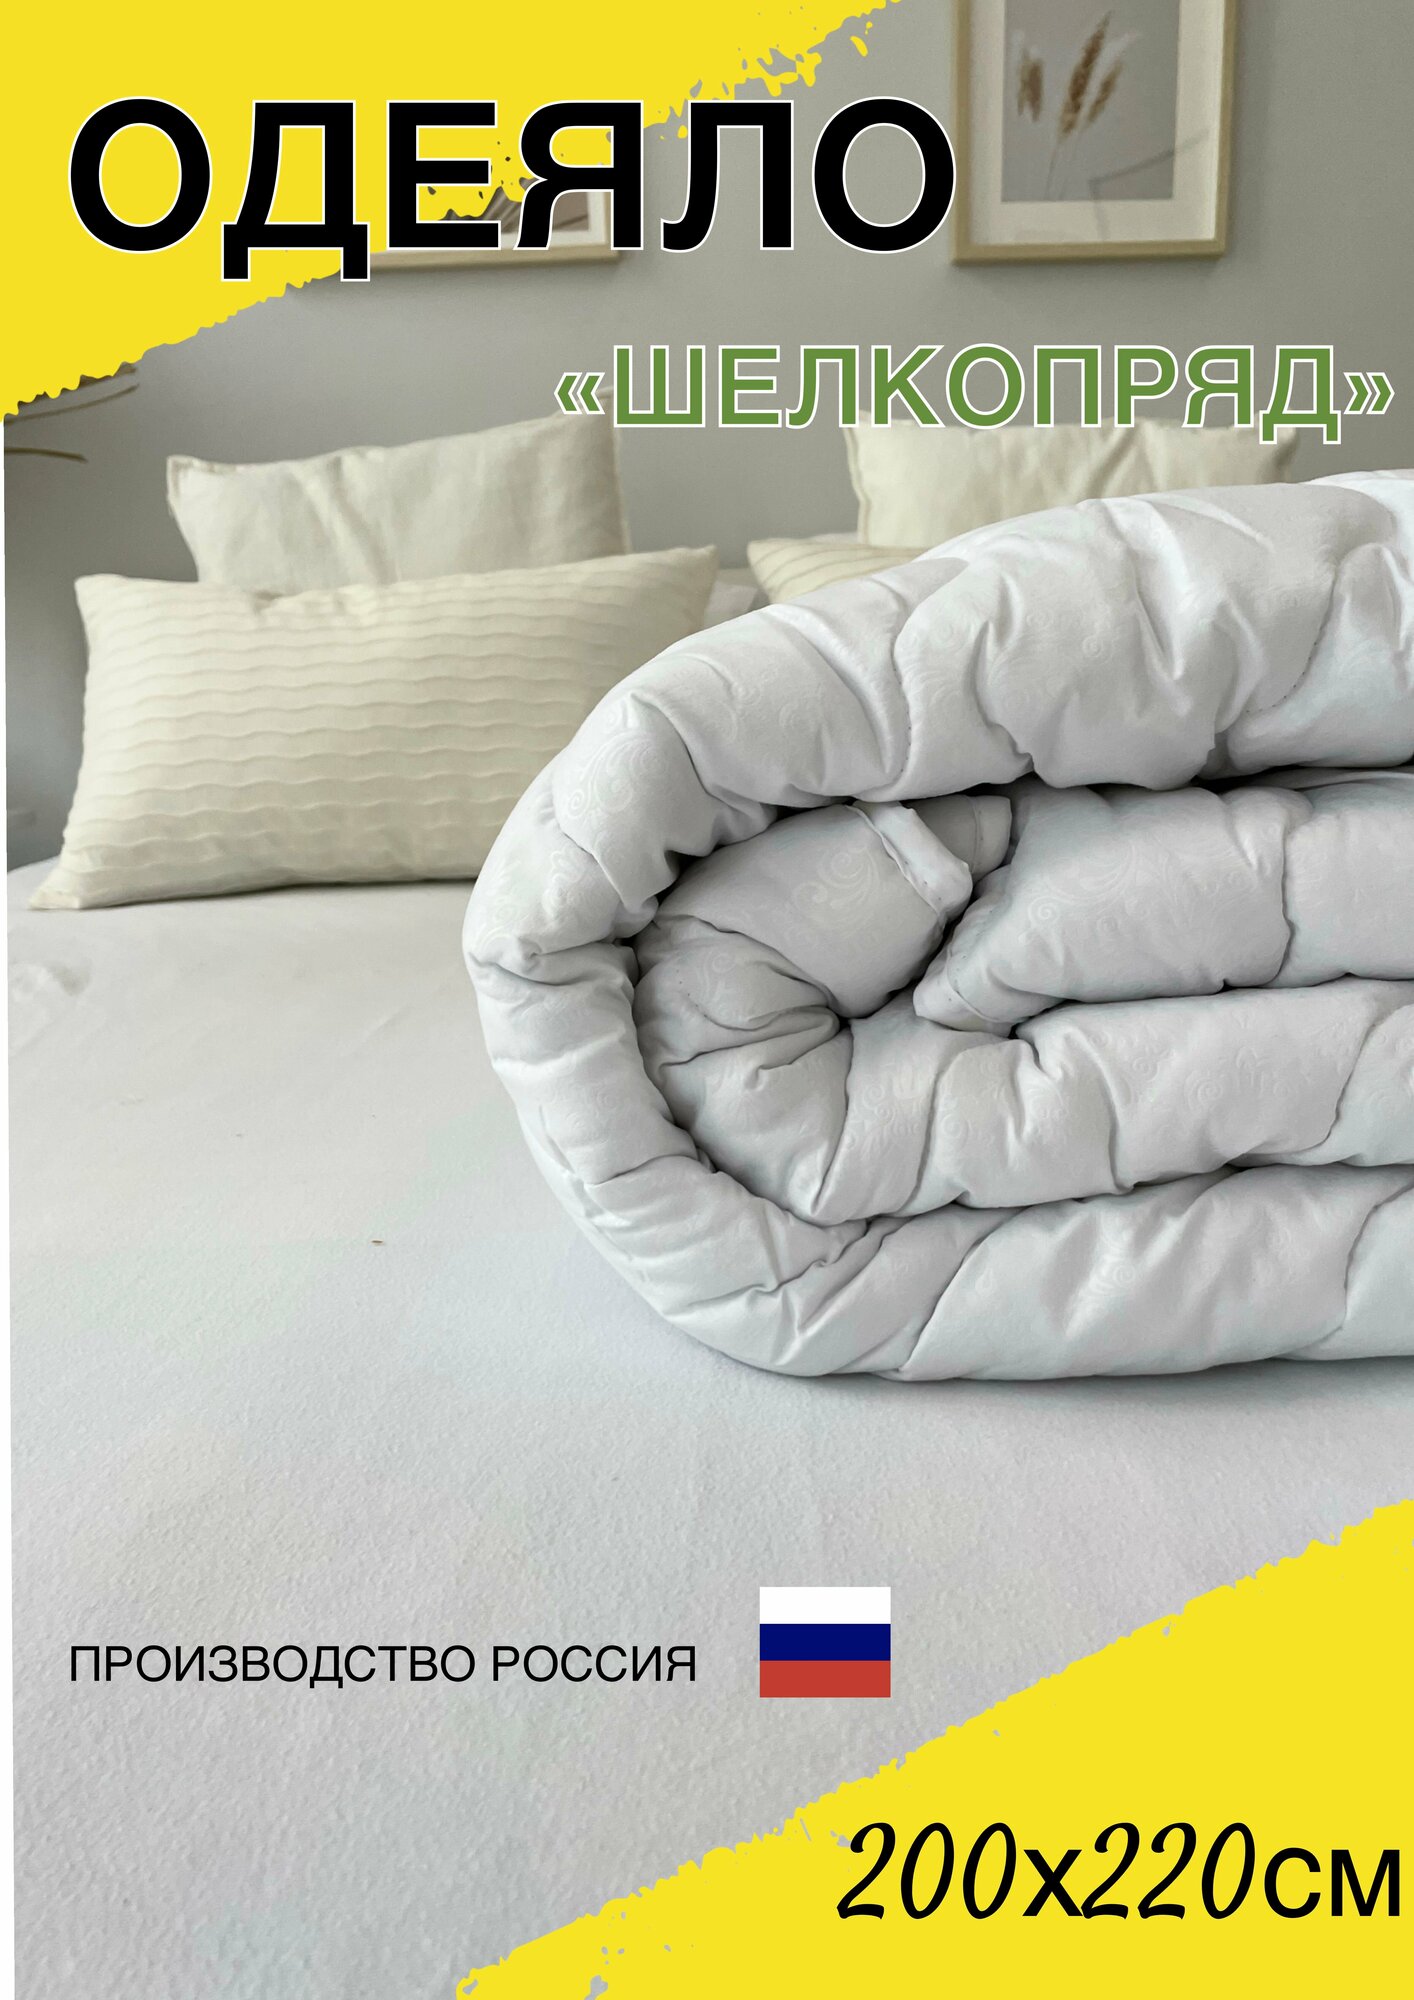 Одеяло евро классическое белое 200х220 см стандарт, гипоалергенное с наполнителем шелкопряд, всесезонное для всей семьи, для дома и дачи